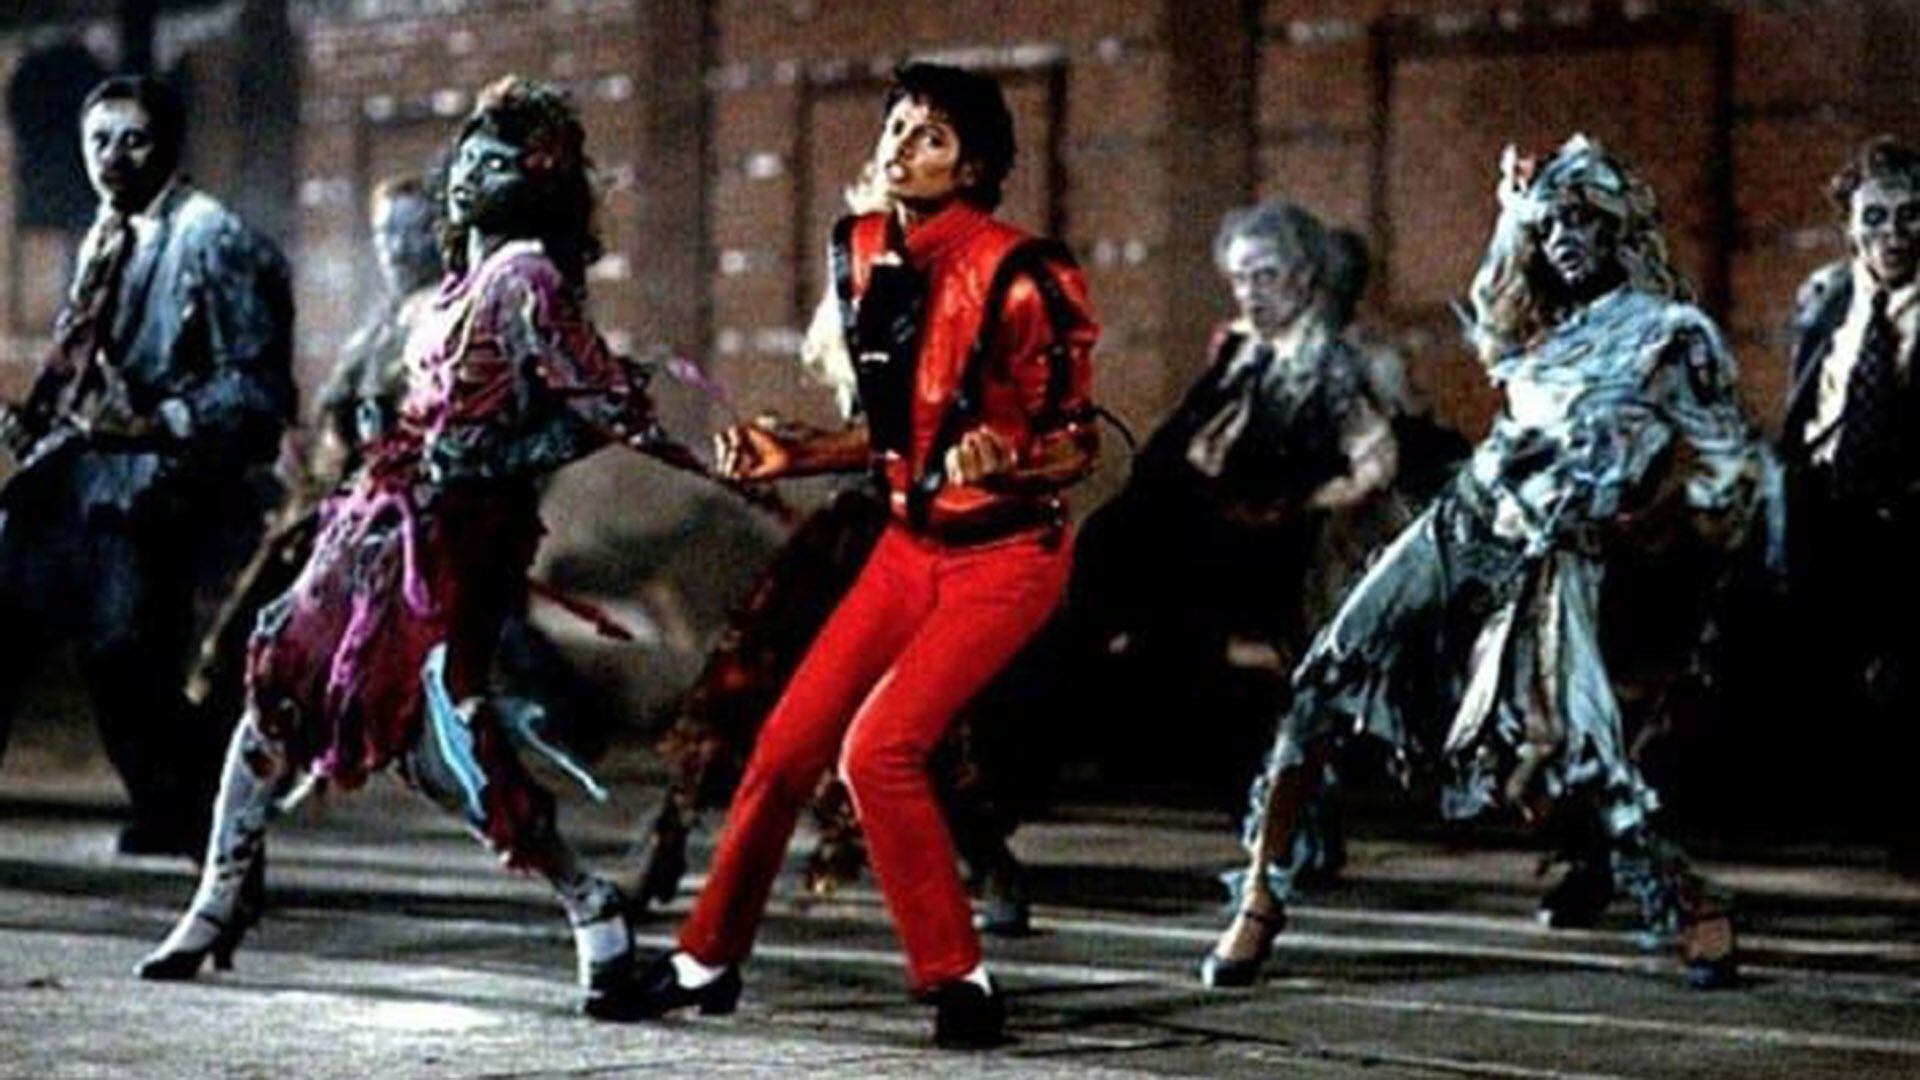  El video de Thriller apareció casi un año después de la salida del disco. Michael Jackson invirtió en él un millón de dólares: 20 veces más de lo que se gastaba en esos años en un video